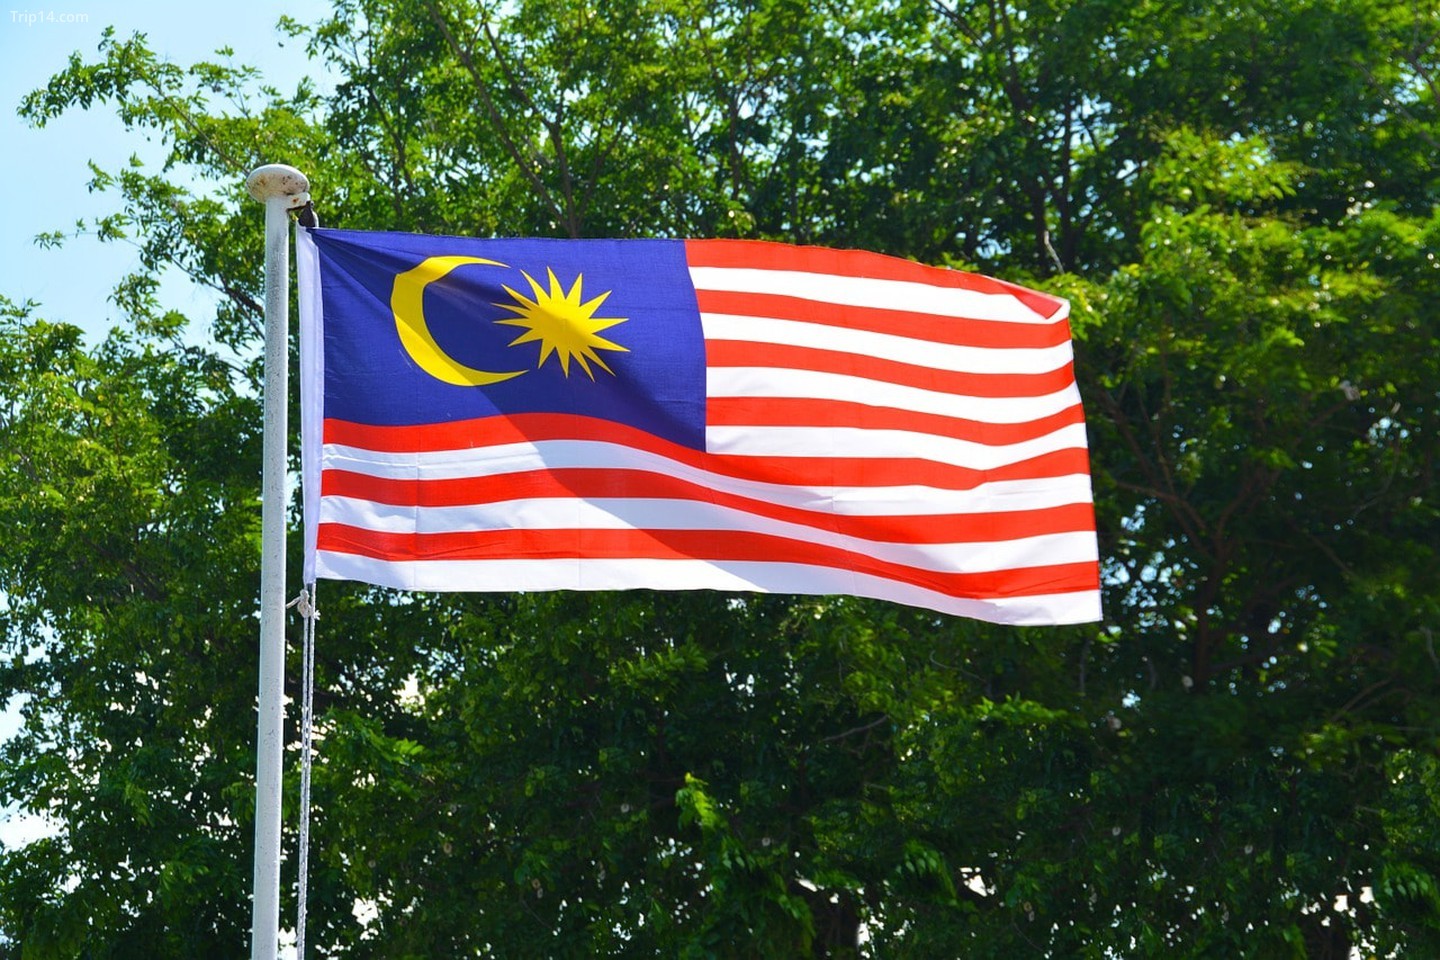 Ý nghĩa quốc kỳ của Malaysia rất đặc biệt và truyền thống. Đó là biểu tượng của sự đoàn kết, tình yêu quê hương, sự trung thành và lòng tự hào của người dân Malaysia. Hãy khám phá thêm về ý nghĩa và giá trị của cờ quốc kỳ trong cuộc sống và lịch sử của đất nước này.